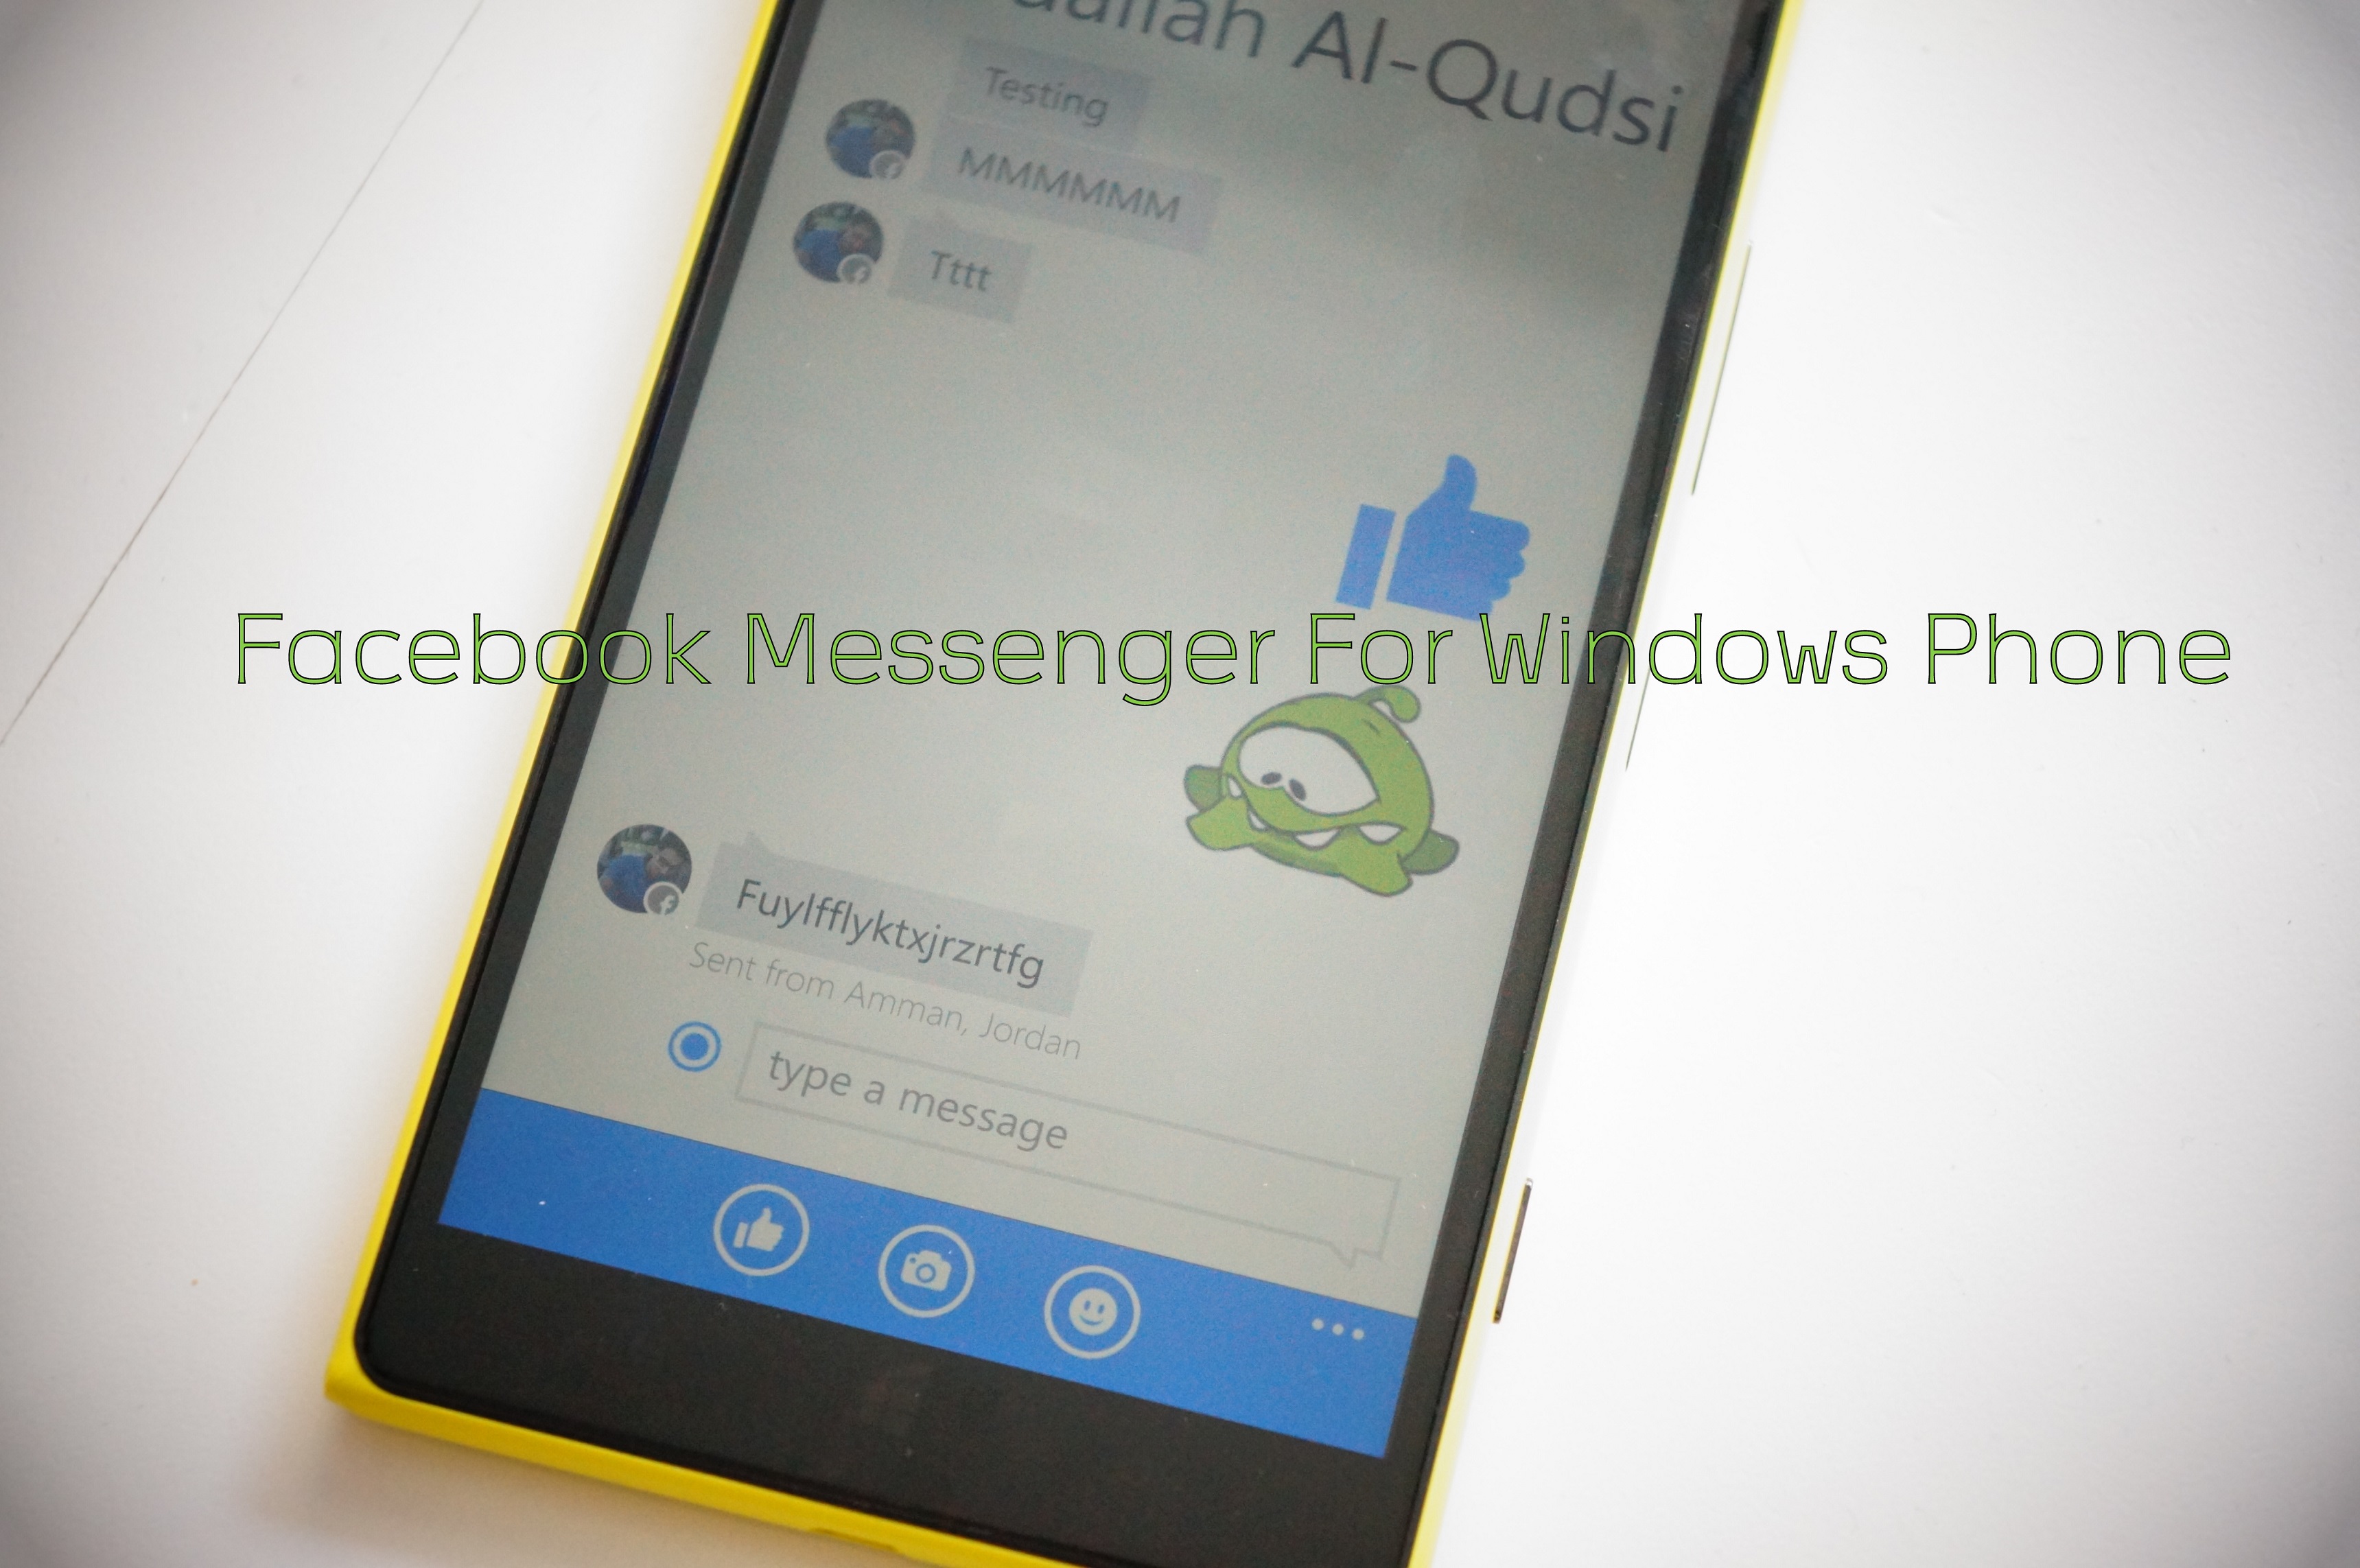 FB messenger download for asha 200